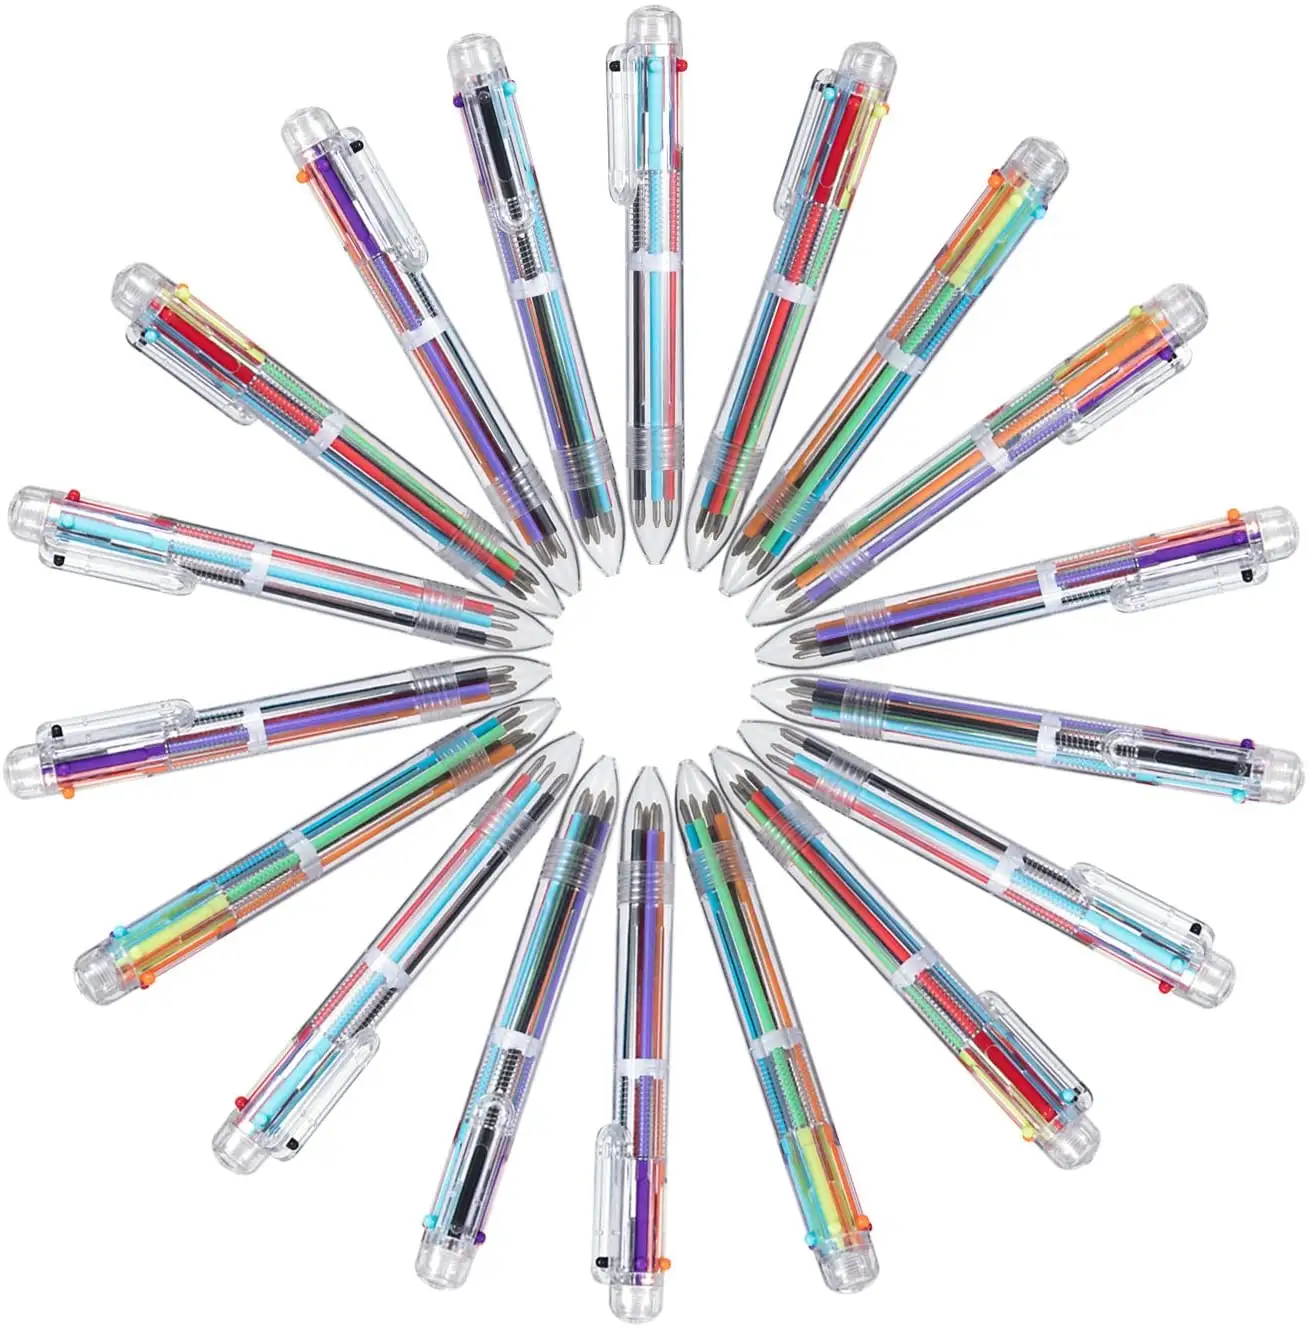 6-in-1 여러 가지 빛깔의 볼펜 6 색 개폐식 볼펜 사무실 학교 용품 학생 어린이 선물